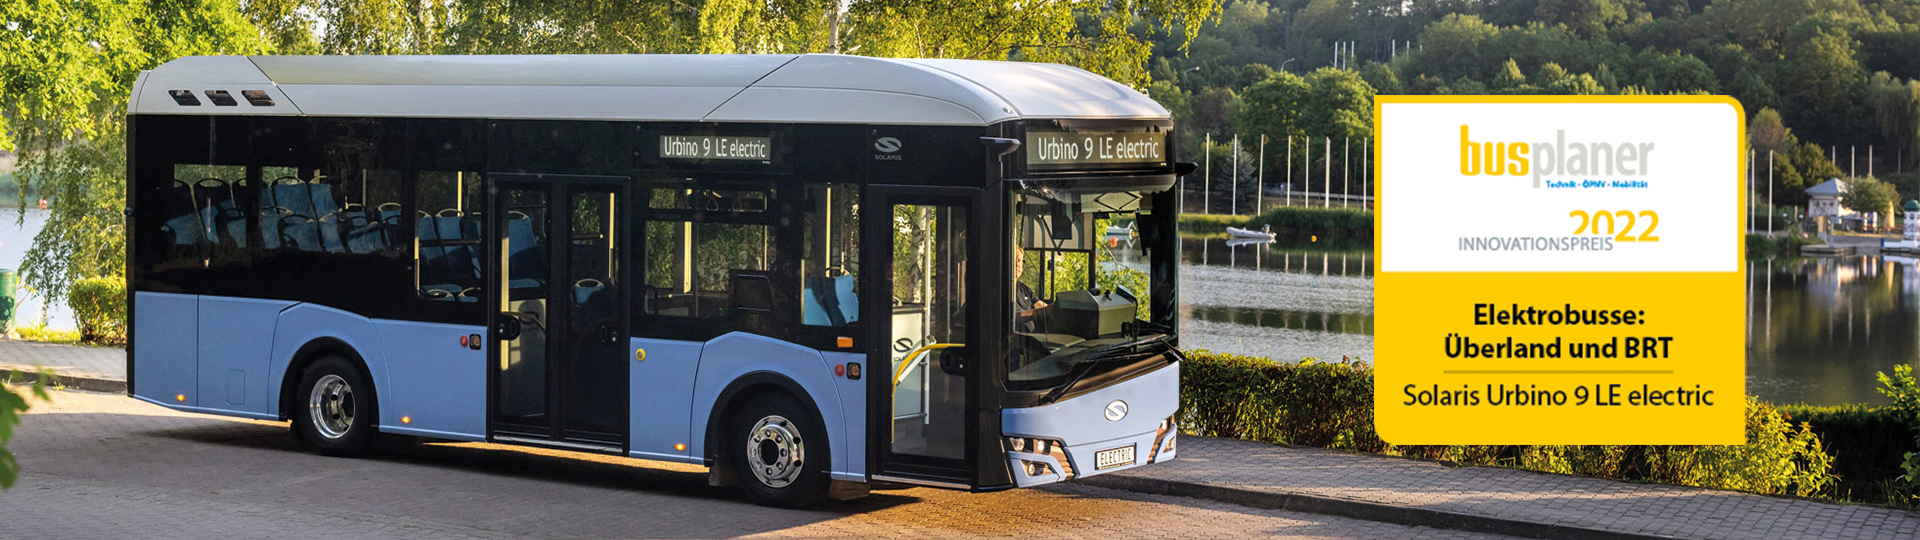 Solaris Urbino 9 LE electric zwycięzcą prestiżowego konkursu busplaner Innovation Award 2022!